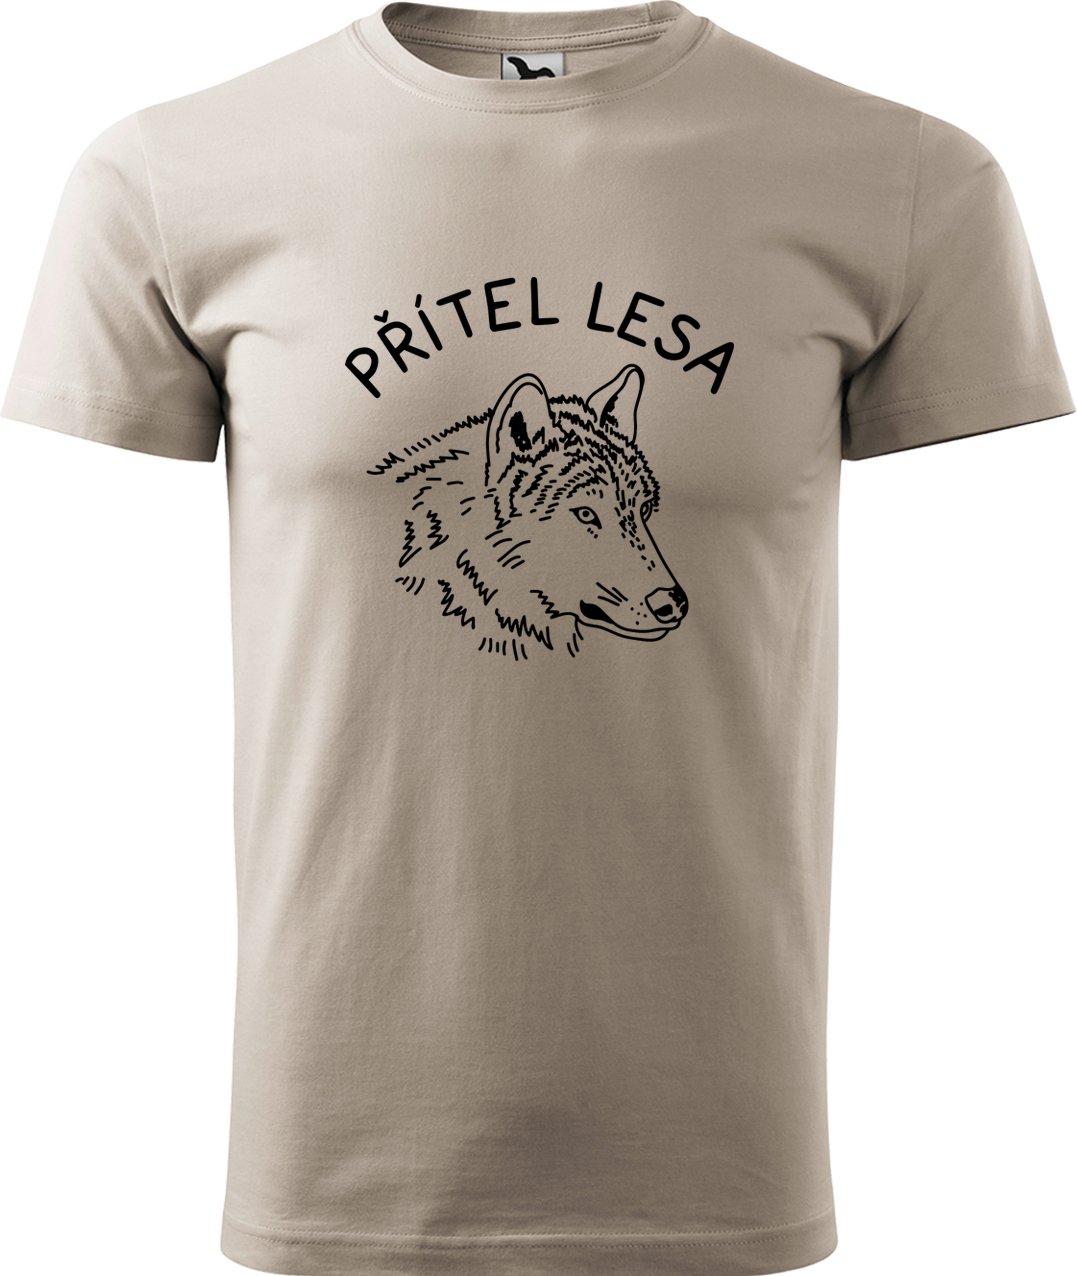 Pánské tričko s vlkem - Přítel lesa Velikost: M, Barva: Béžová (51), Střih: pánský